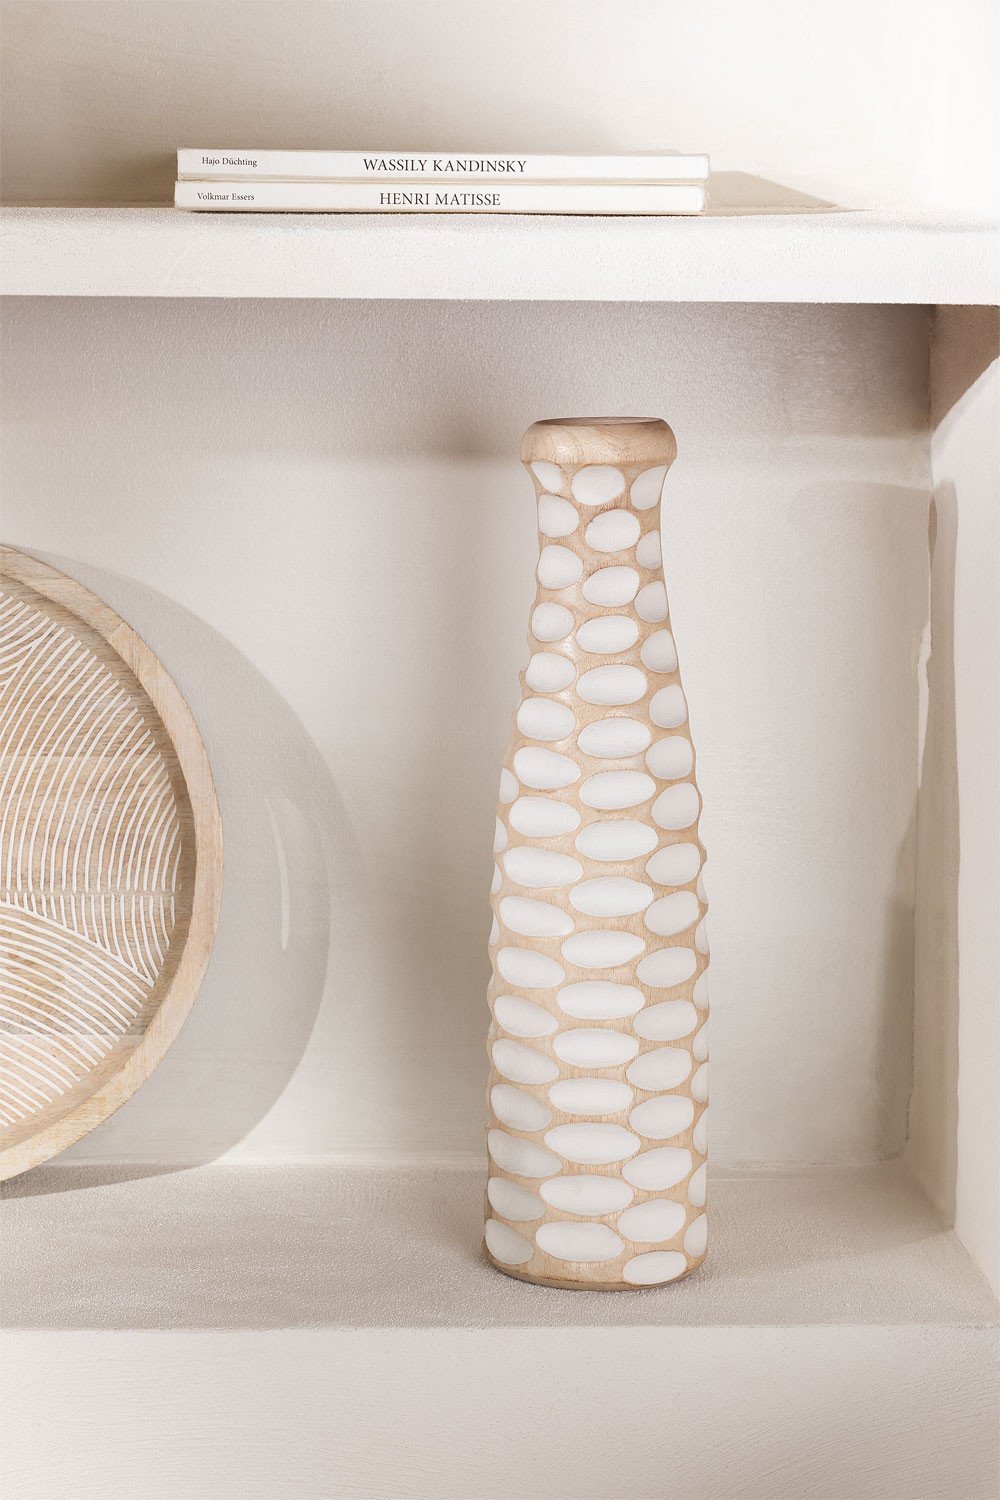 Mango Wood Vase Manly, gallery image 1